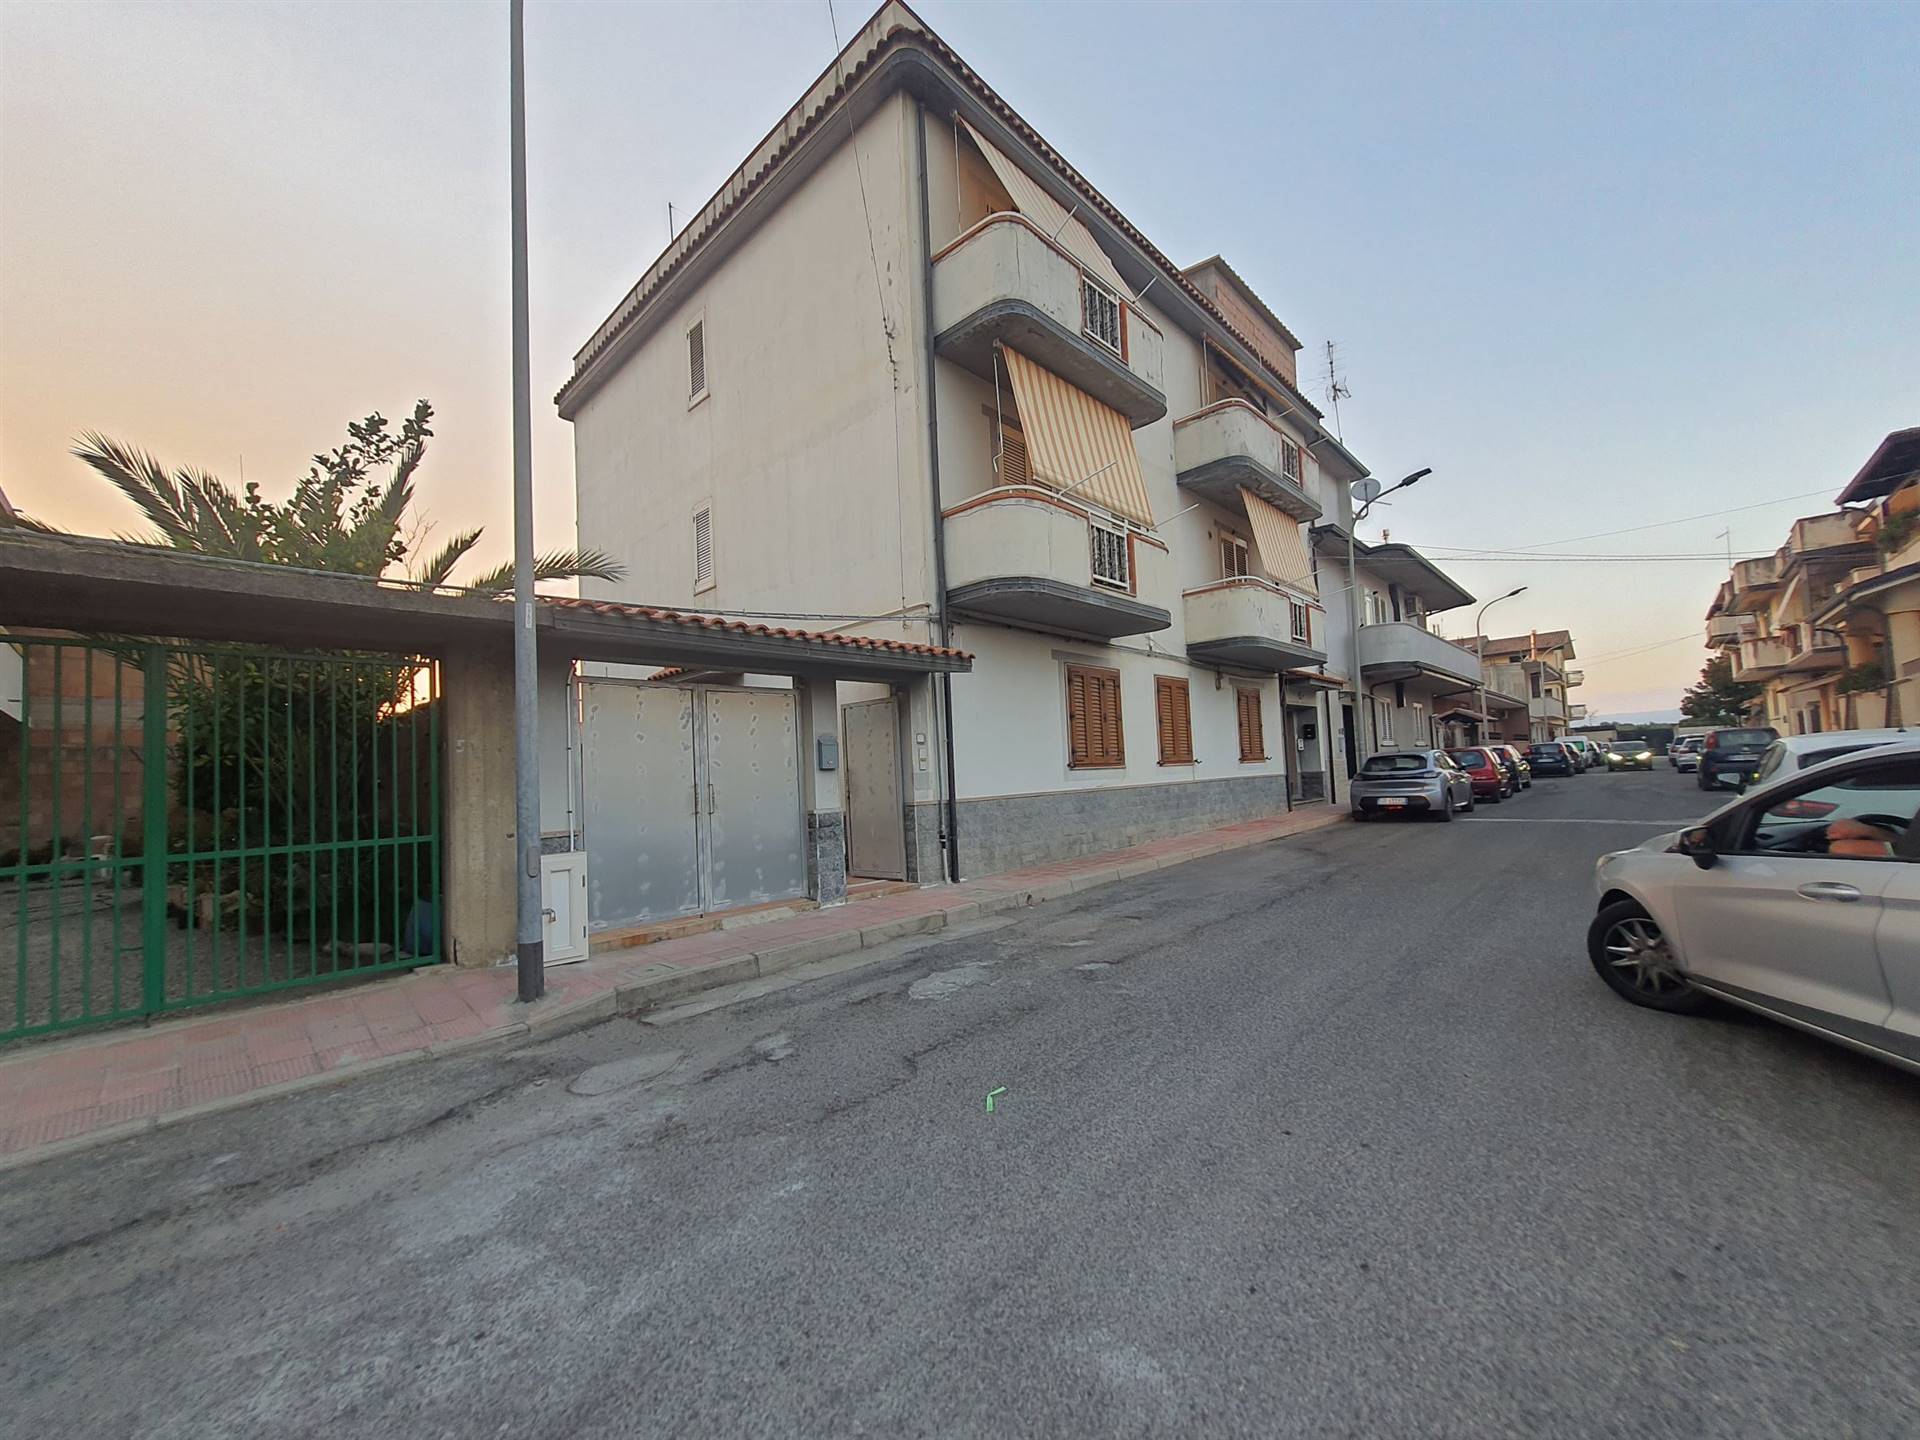 Appartamento in vendita a Gioia Tauro, 6 locali, prezzo € 125.000 | PortaleAgenzieImmobiliari.it